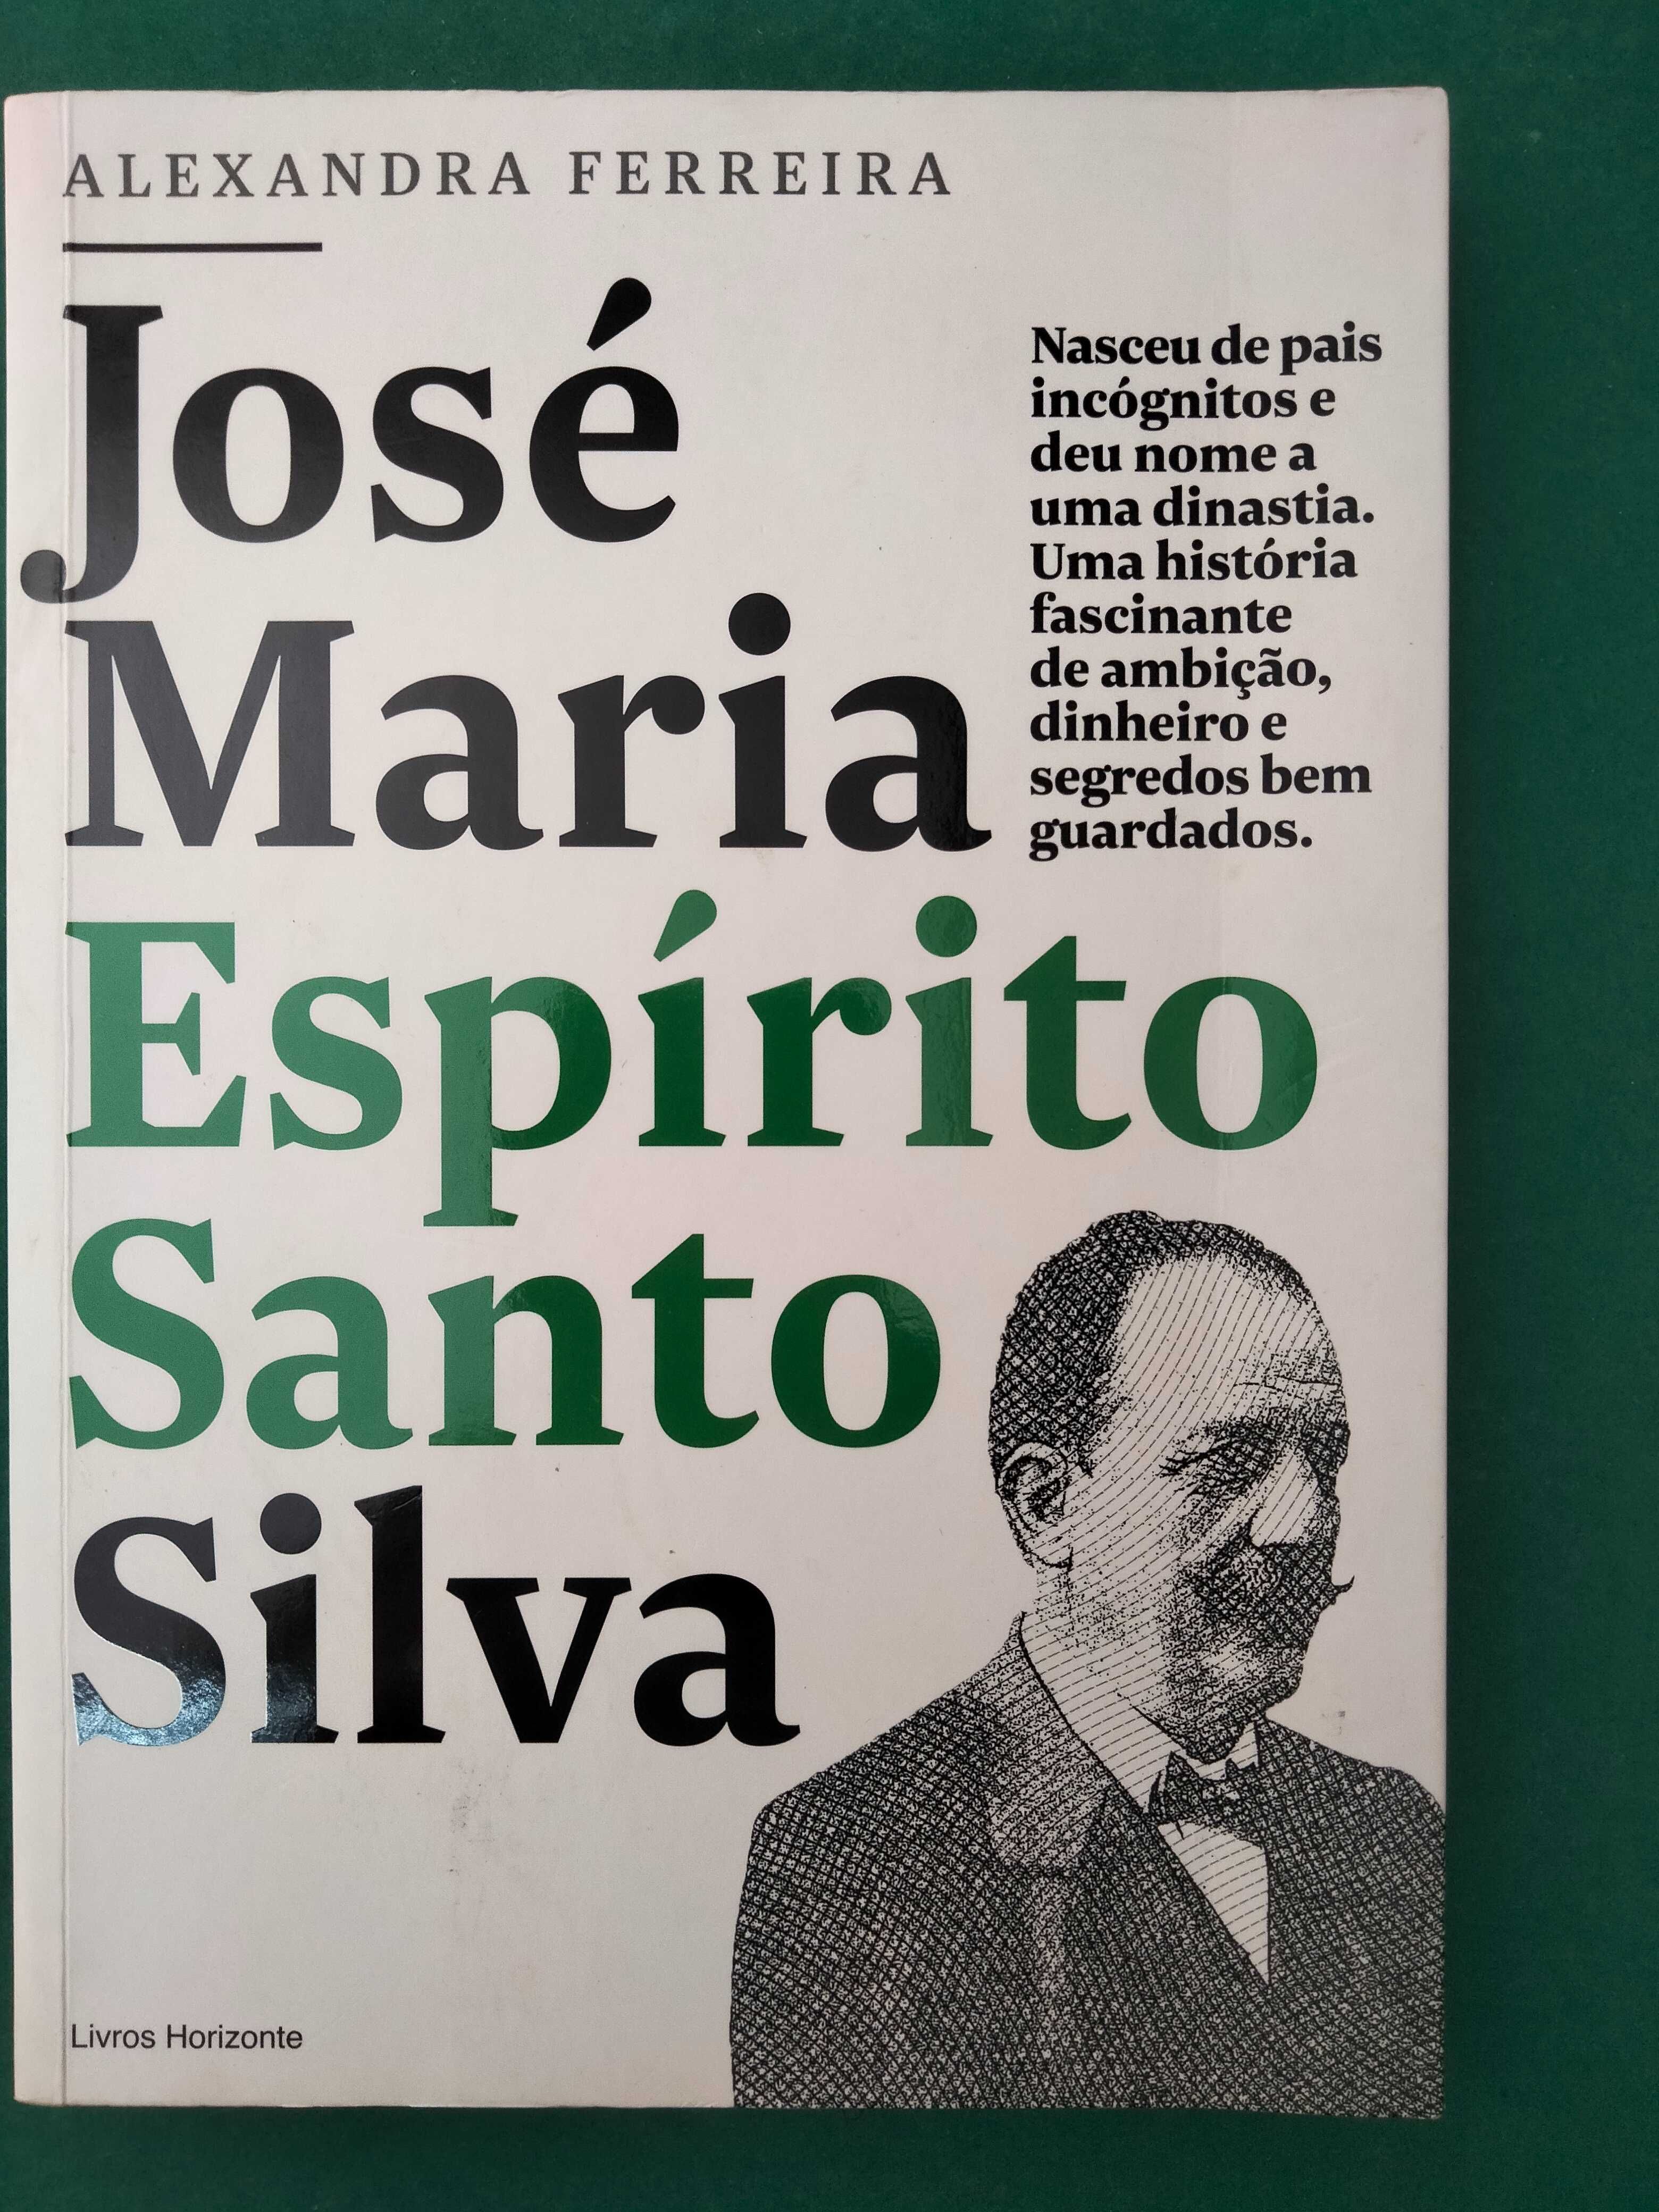 José Maria Espírito Santo Silva - Alexandra Ferreira